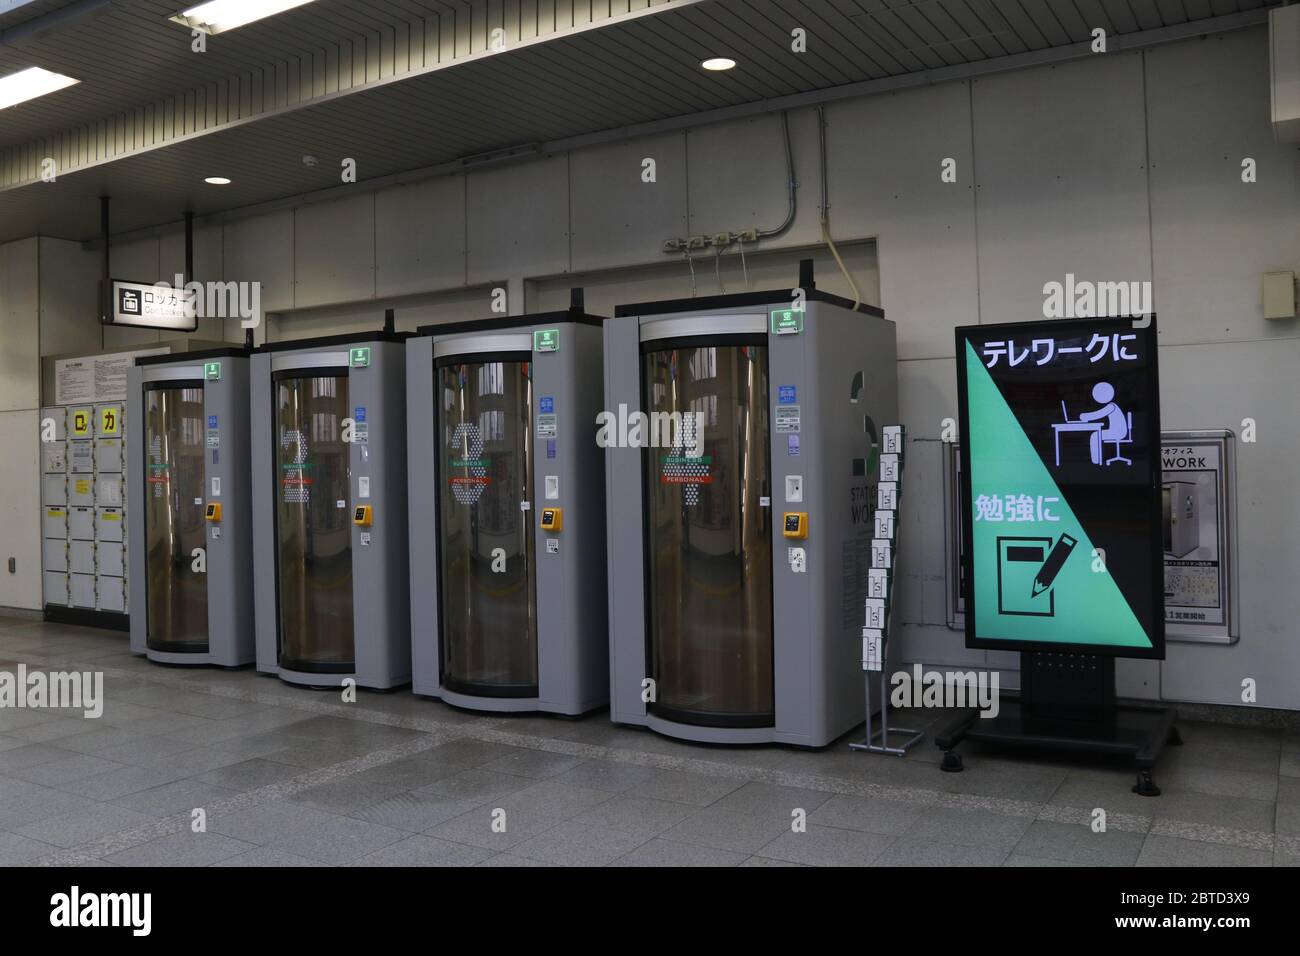 Stazione di lavoro, un posto a noleggio per lavoro è stato situato all'interno della stazione di Ikebukuro, una delle più trafficate di Tokyo. Foto Stock